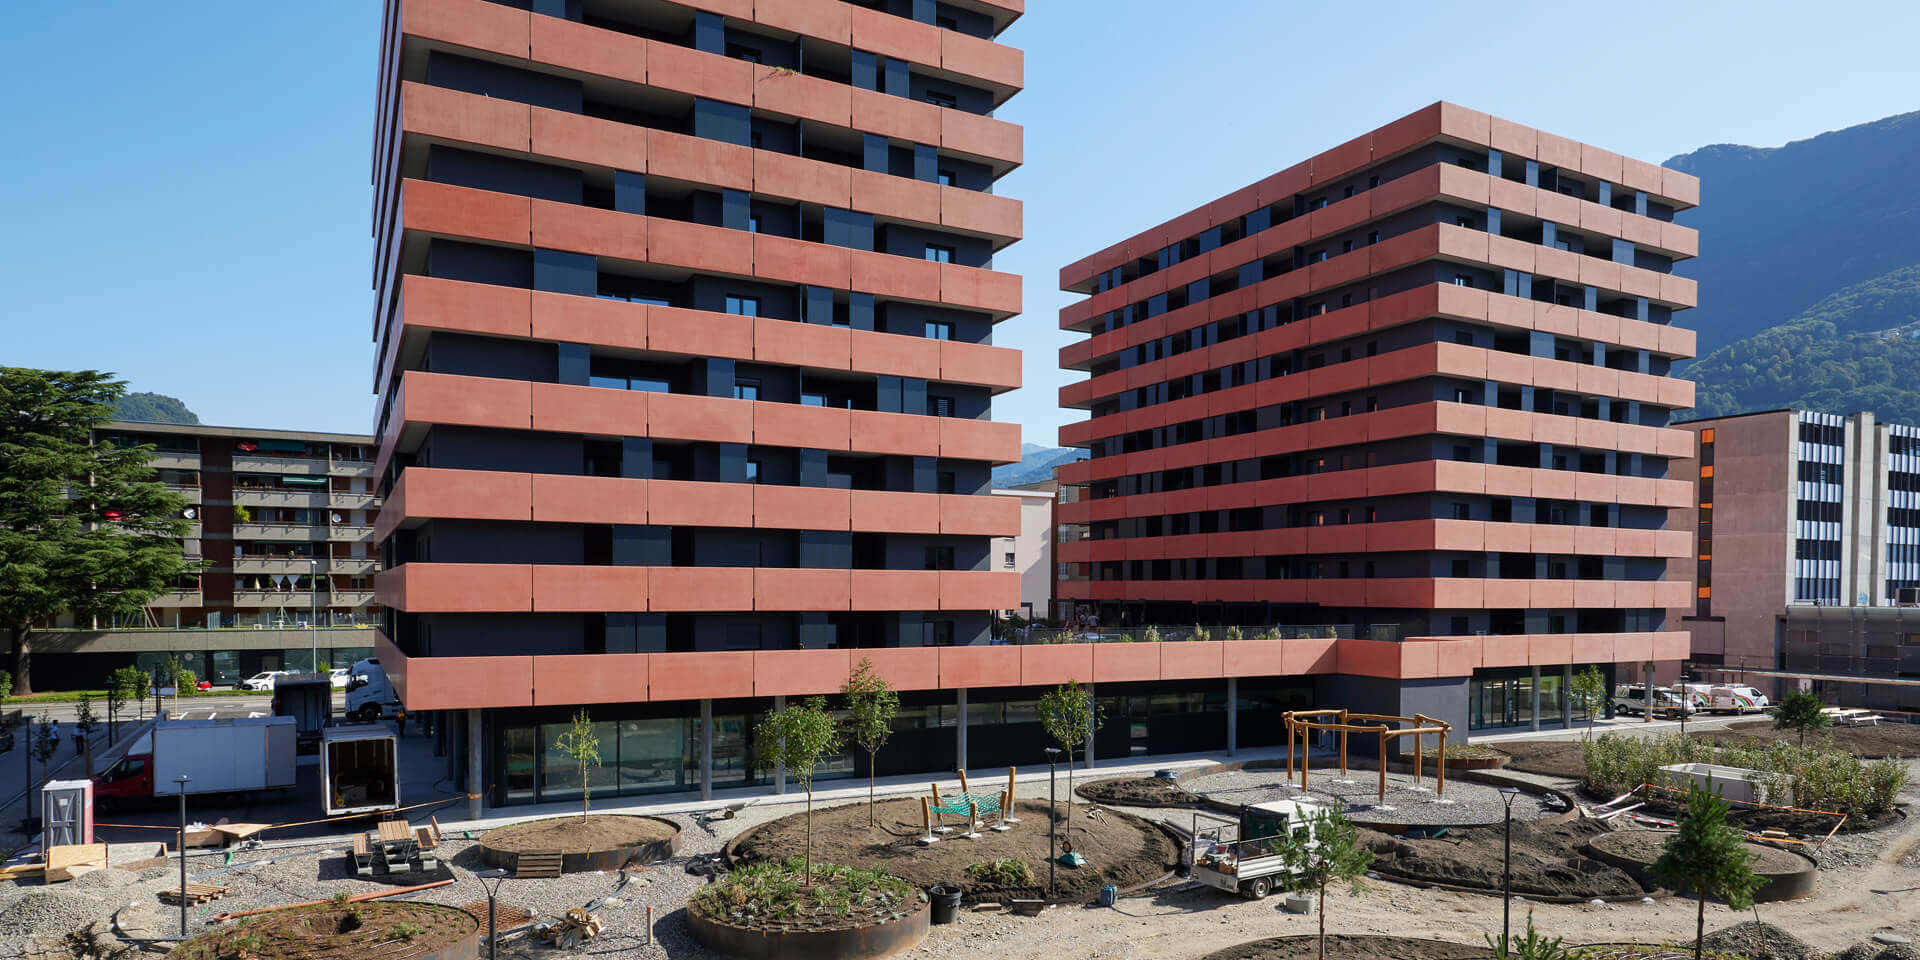 Les bâtiments accueillent 153 logements avec de belles terrasses, un supermarché au rez-de-chaussée ainsi qu’un parking en sous-sol.